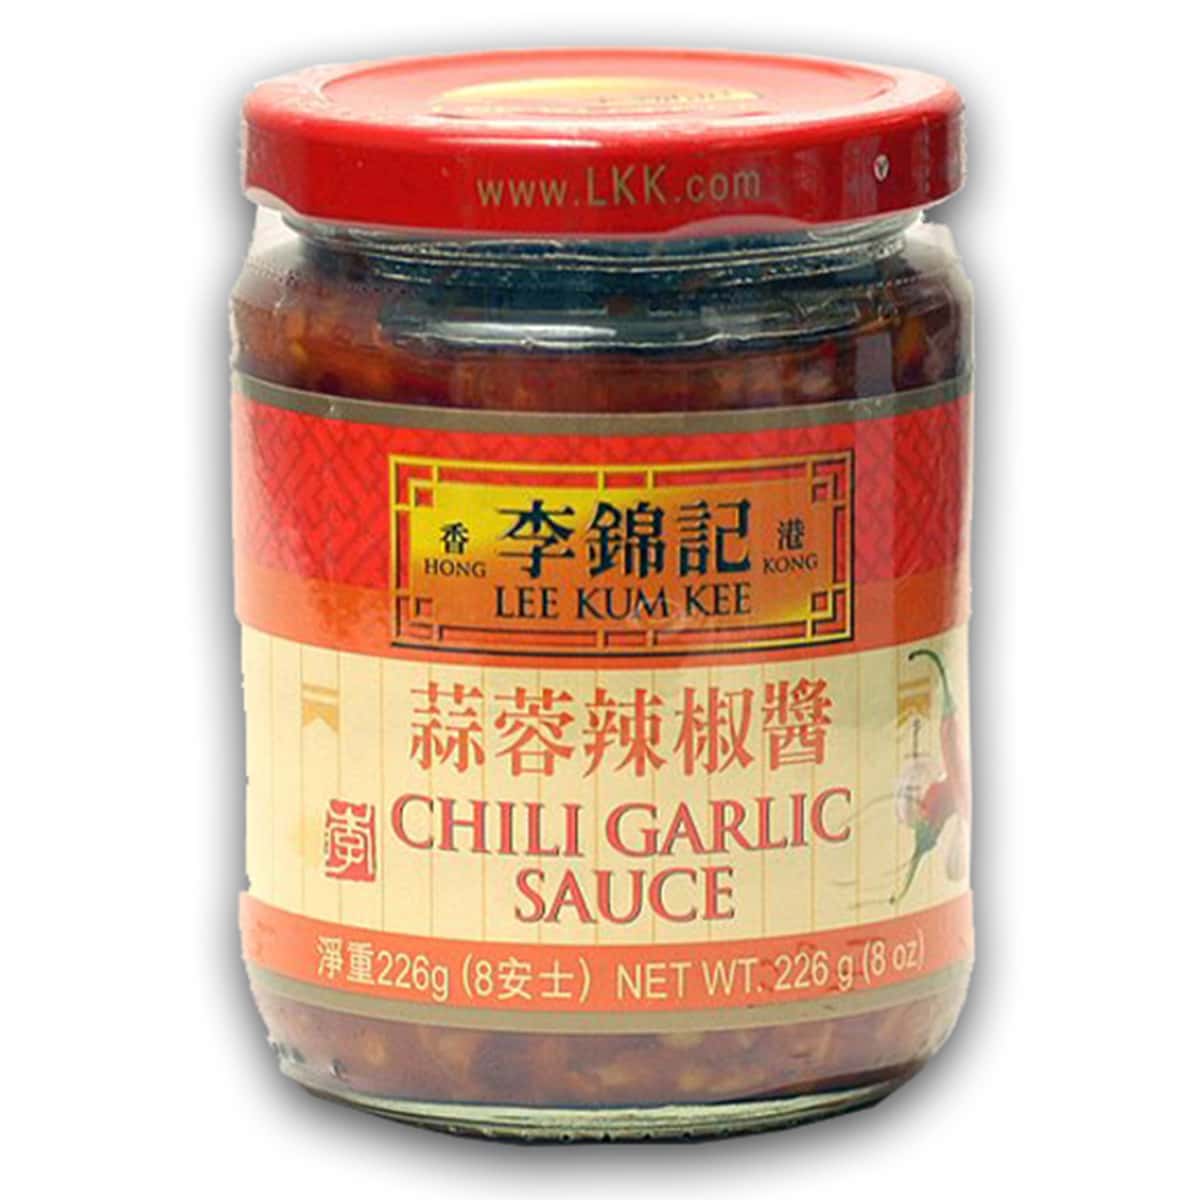 Buy Lee Kum Kee Chili Garlic Sauce - 226 gm